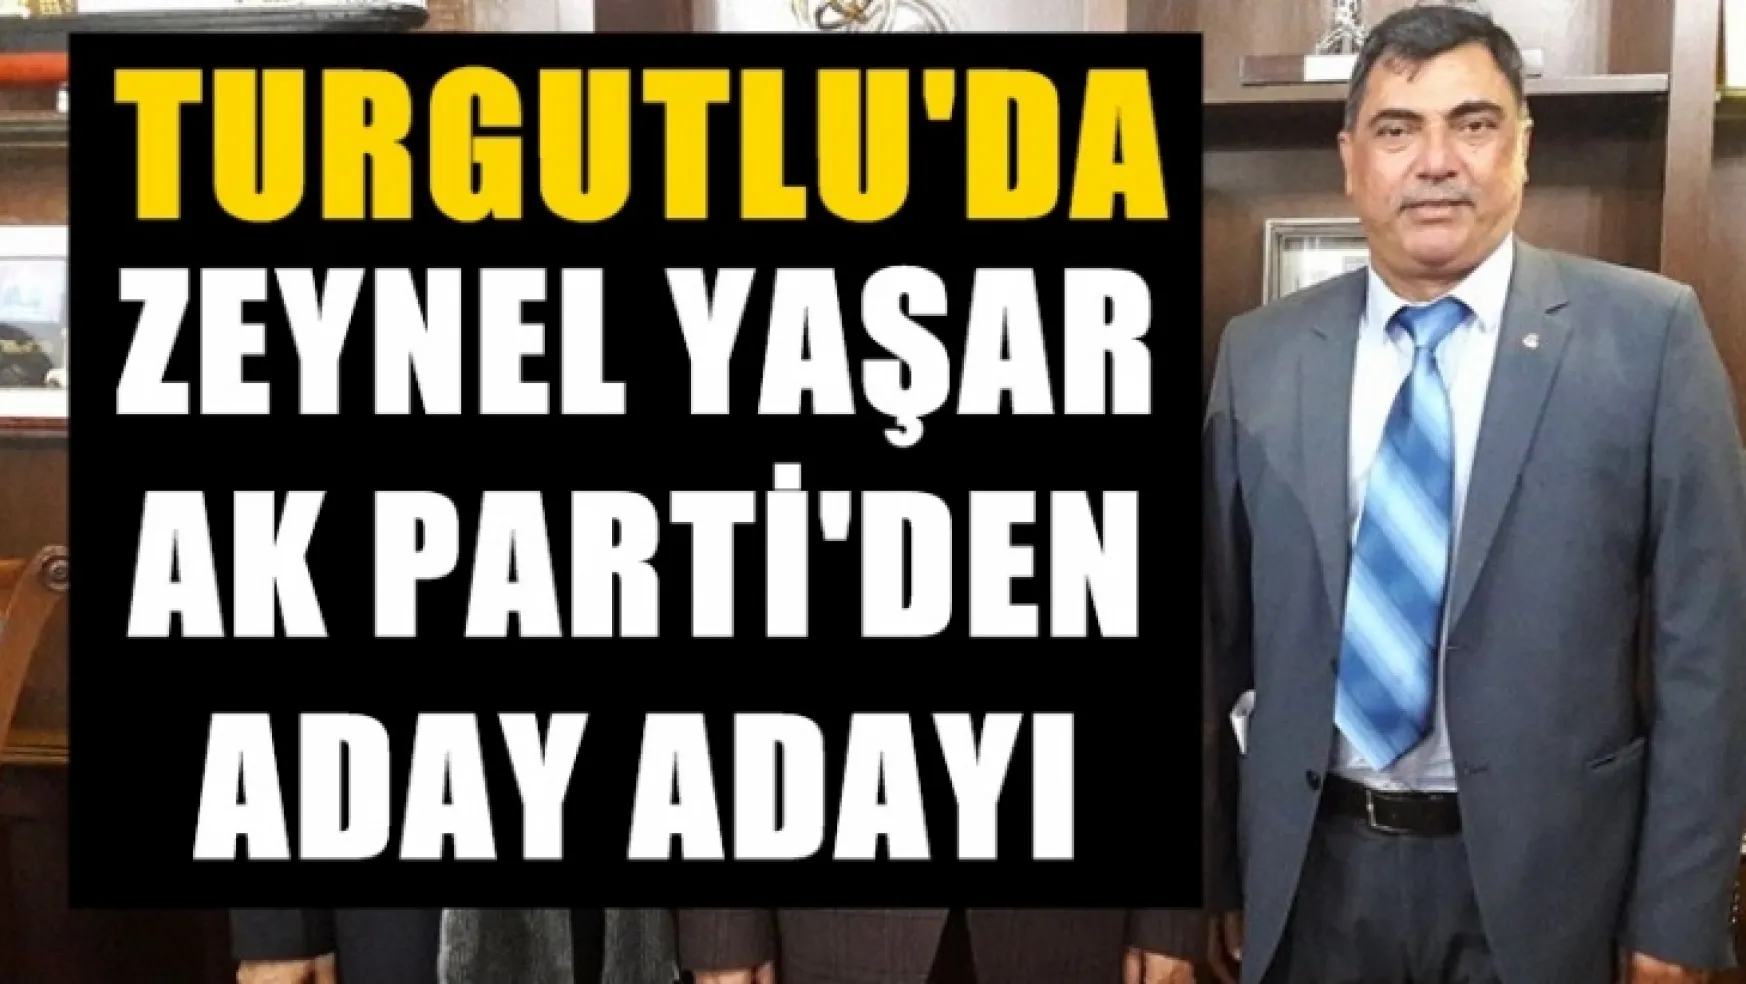 Sondakika!... Zeynel Yaşar AK Parti'den Aday Adayı